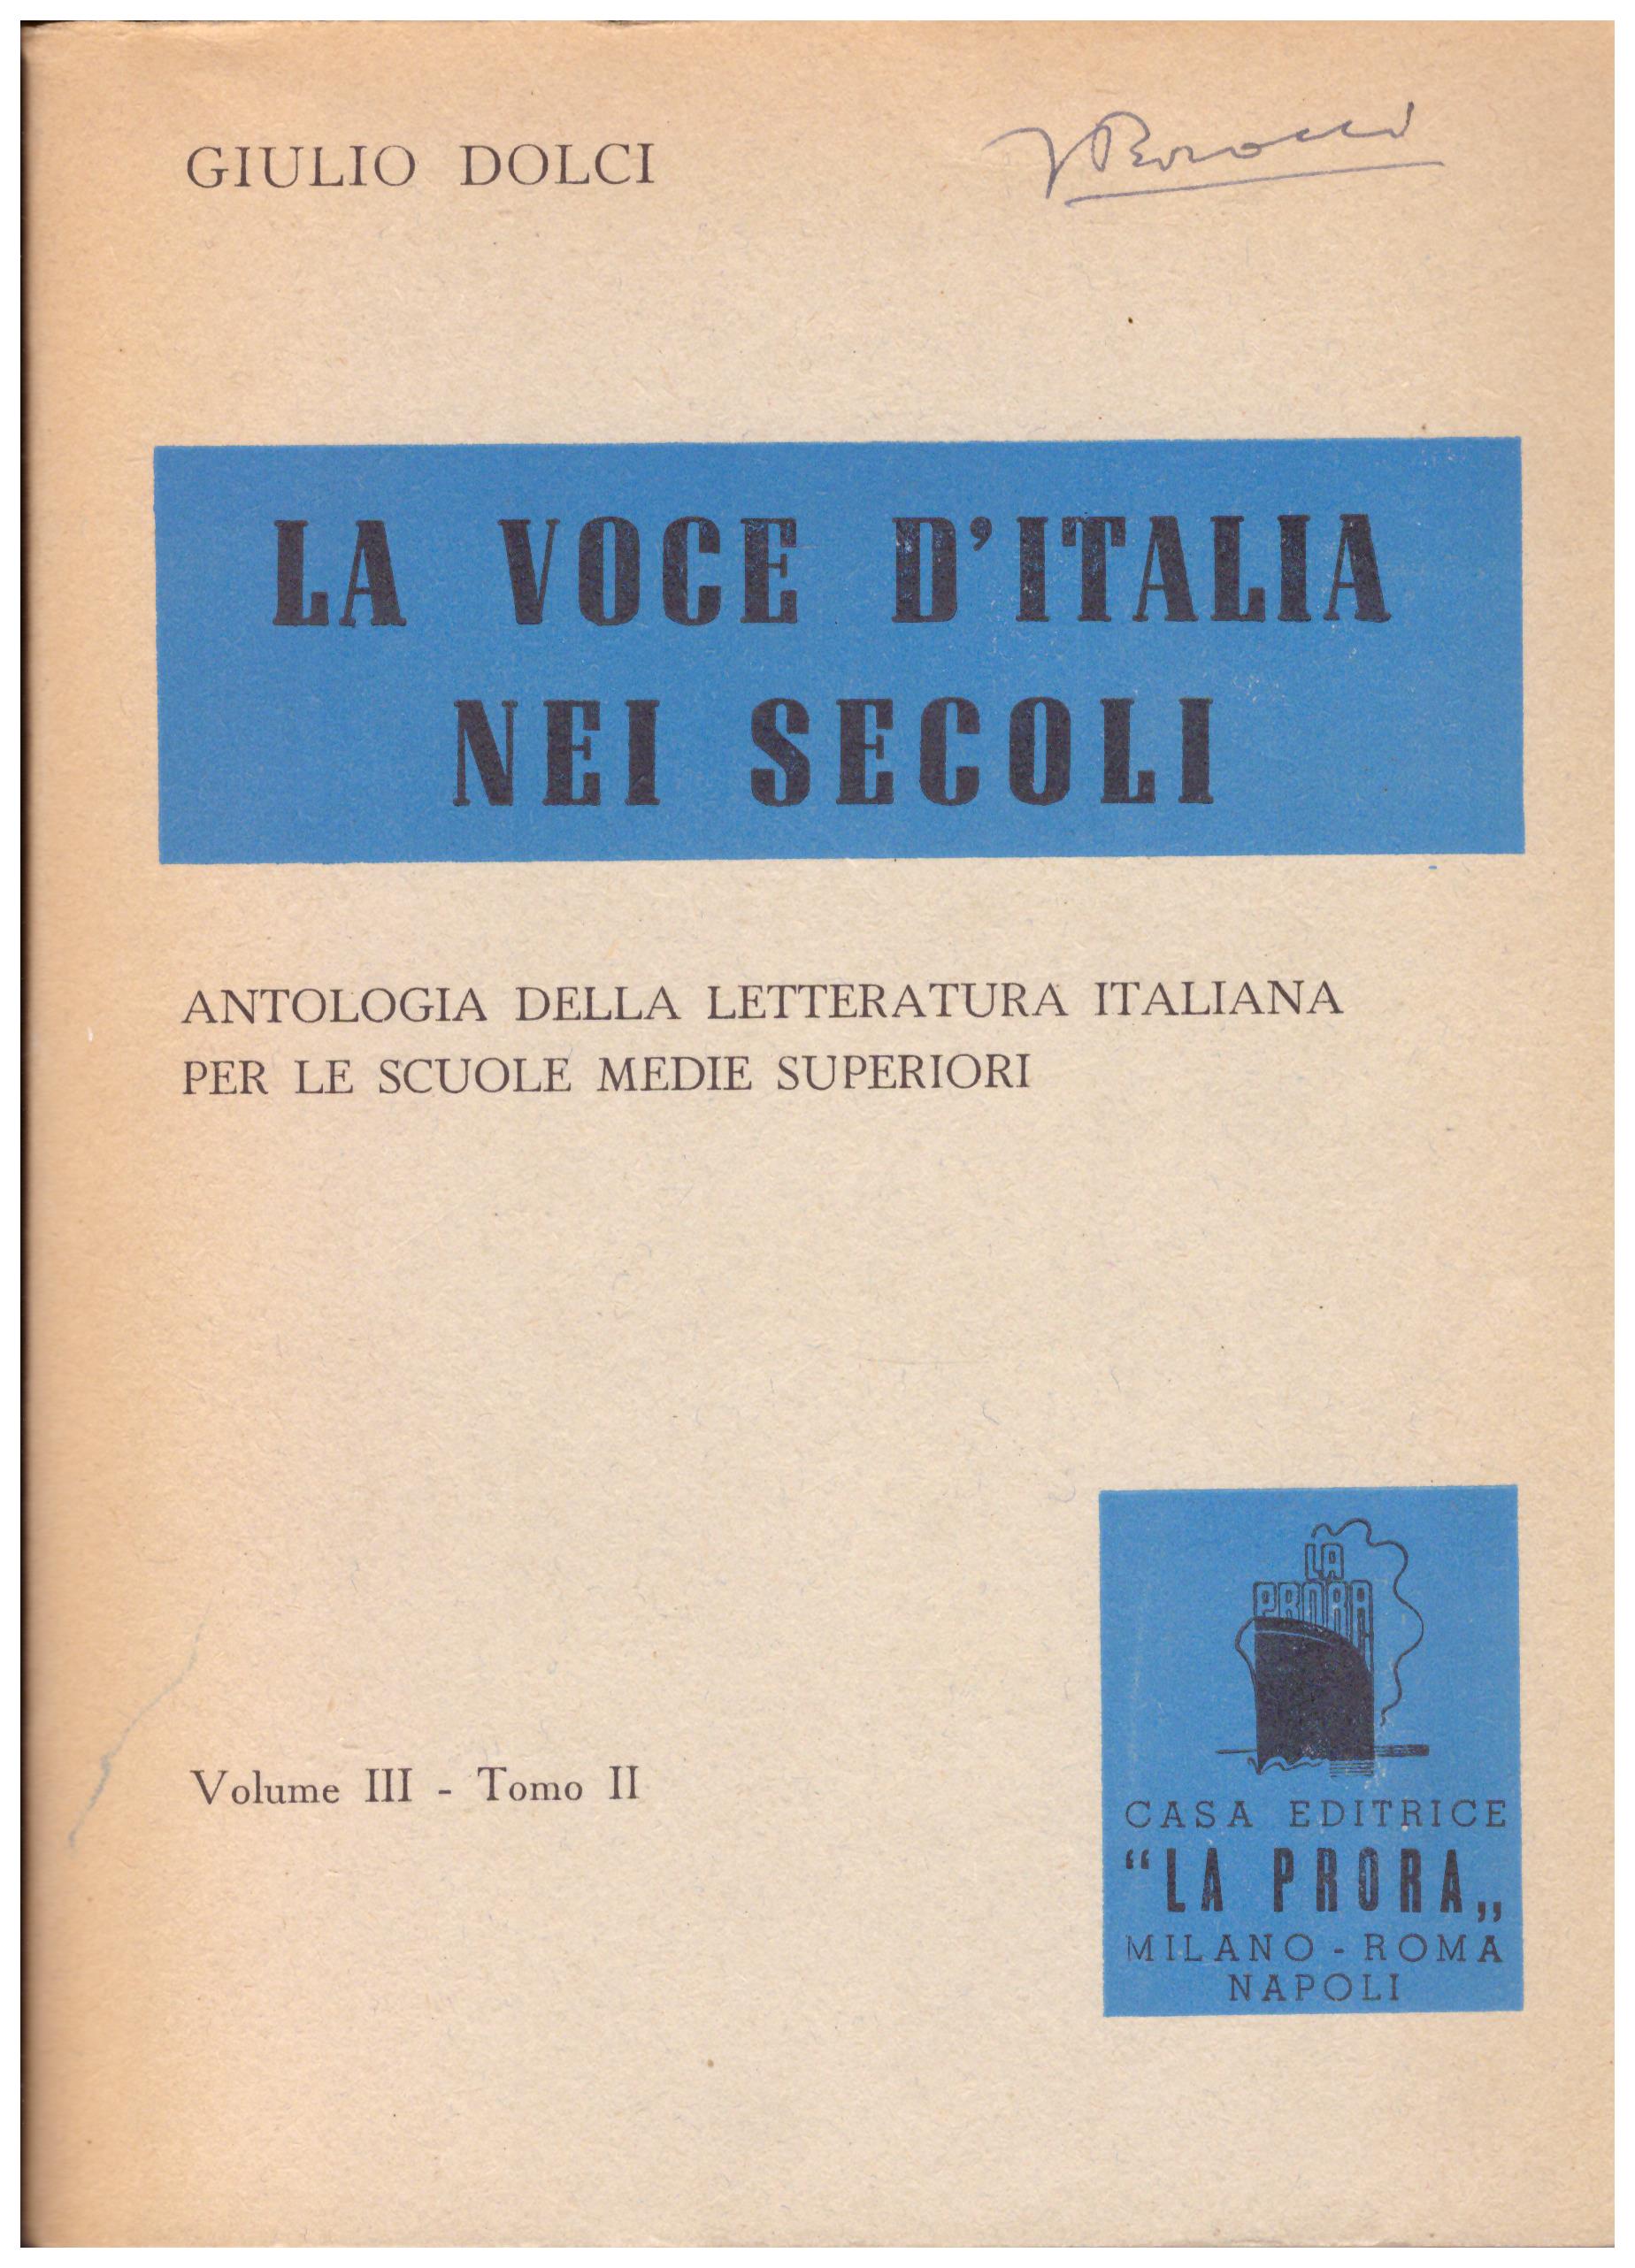 Titolo: La voce d'italia nei secoli vol 3 tom 2  autore: Giulio Dolci  editore: La Prora 1952